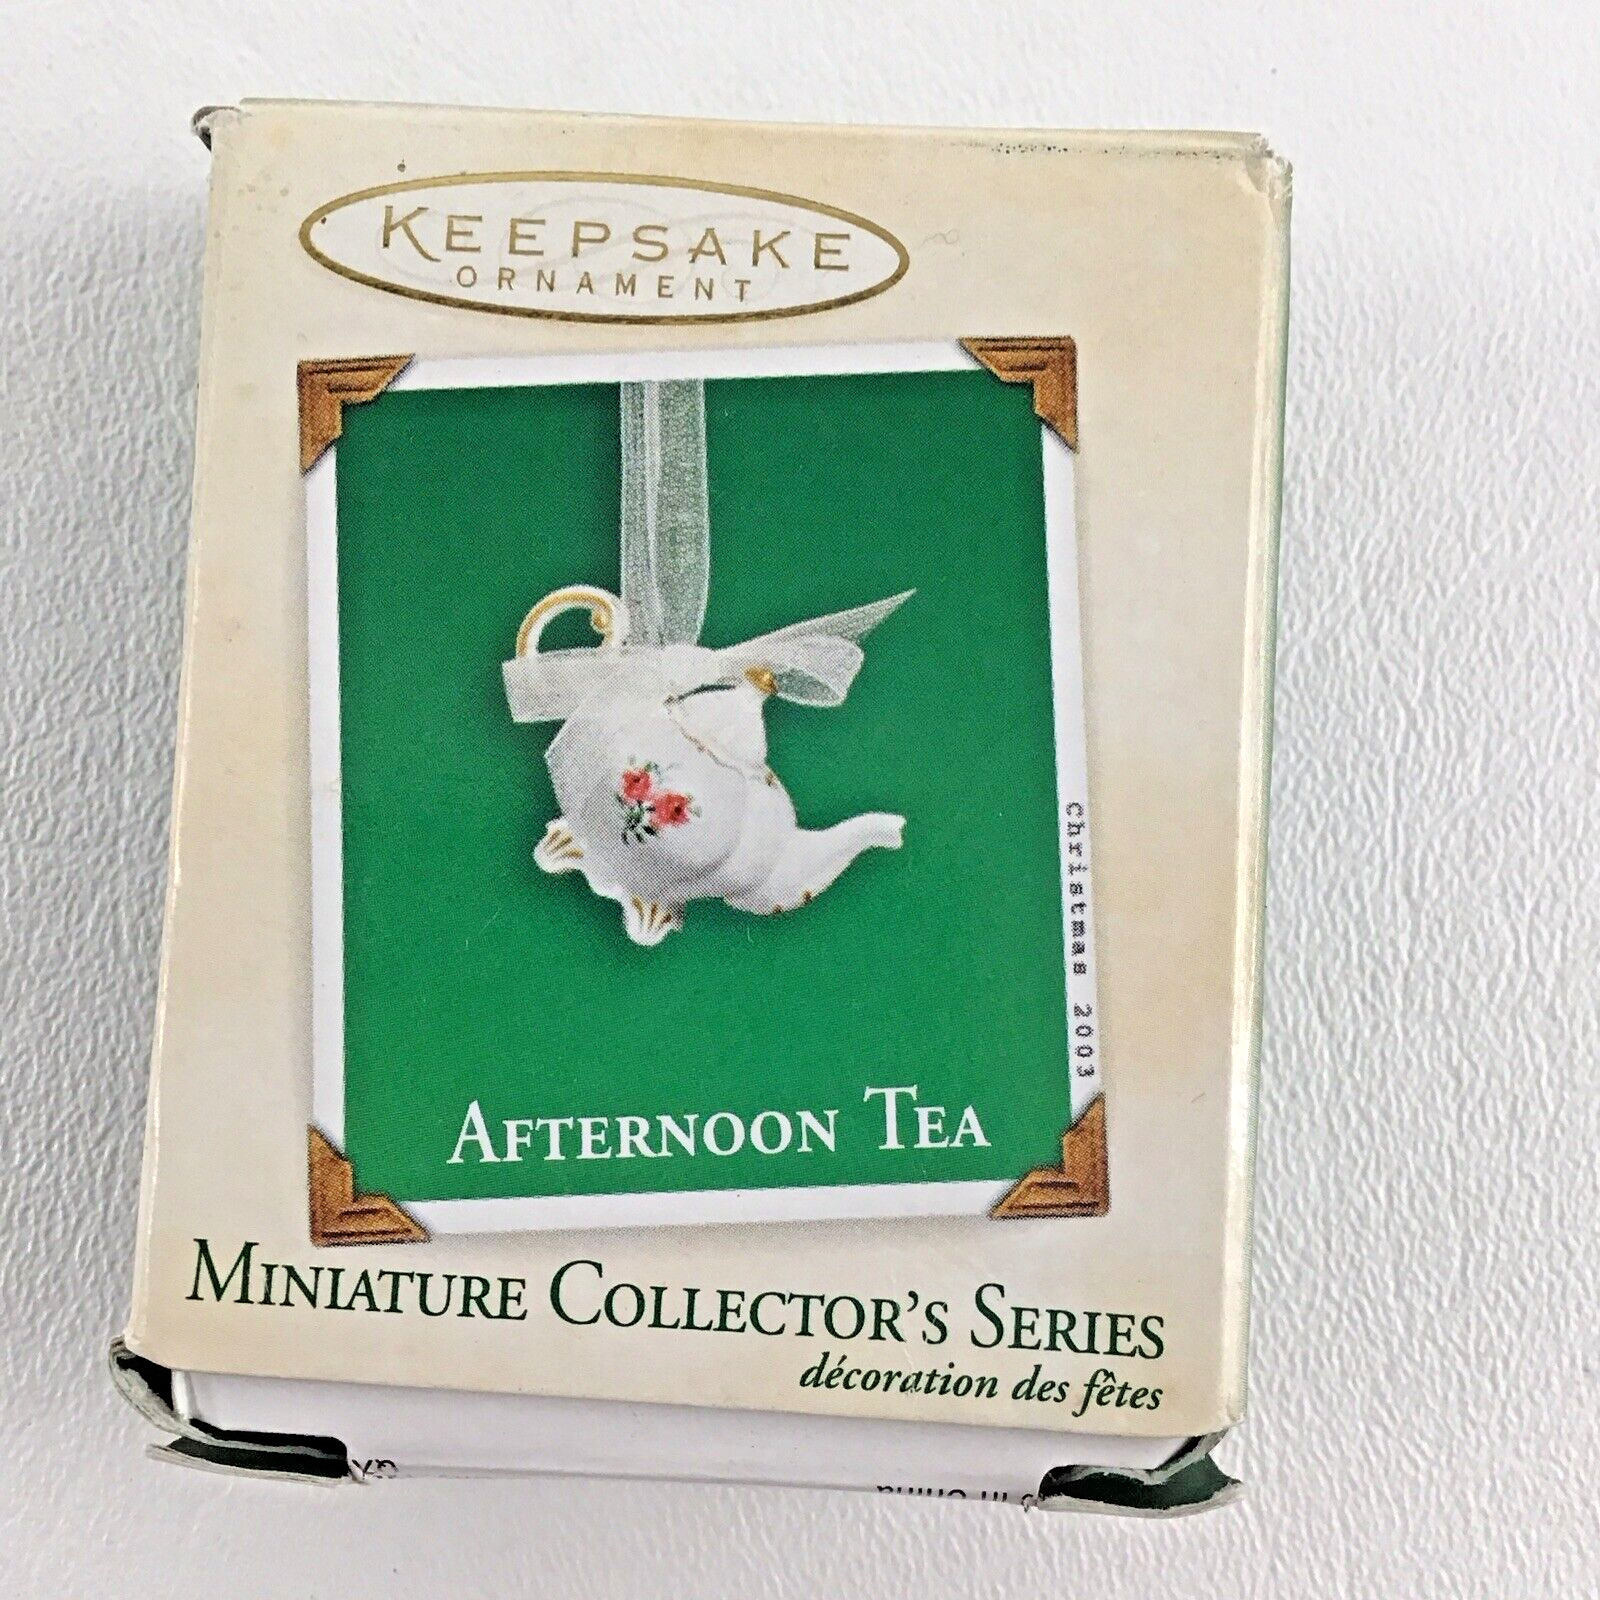 Hallmark Keepsake Christmas Ornament Miniature Afternoon Tea #1 New Vintage 2003